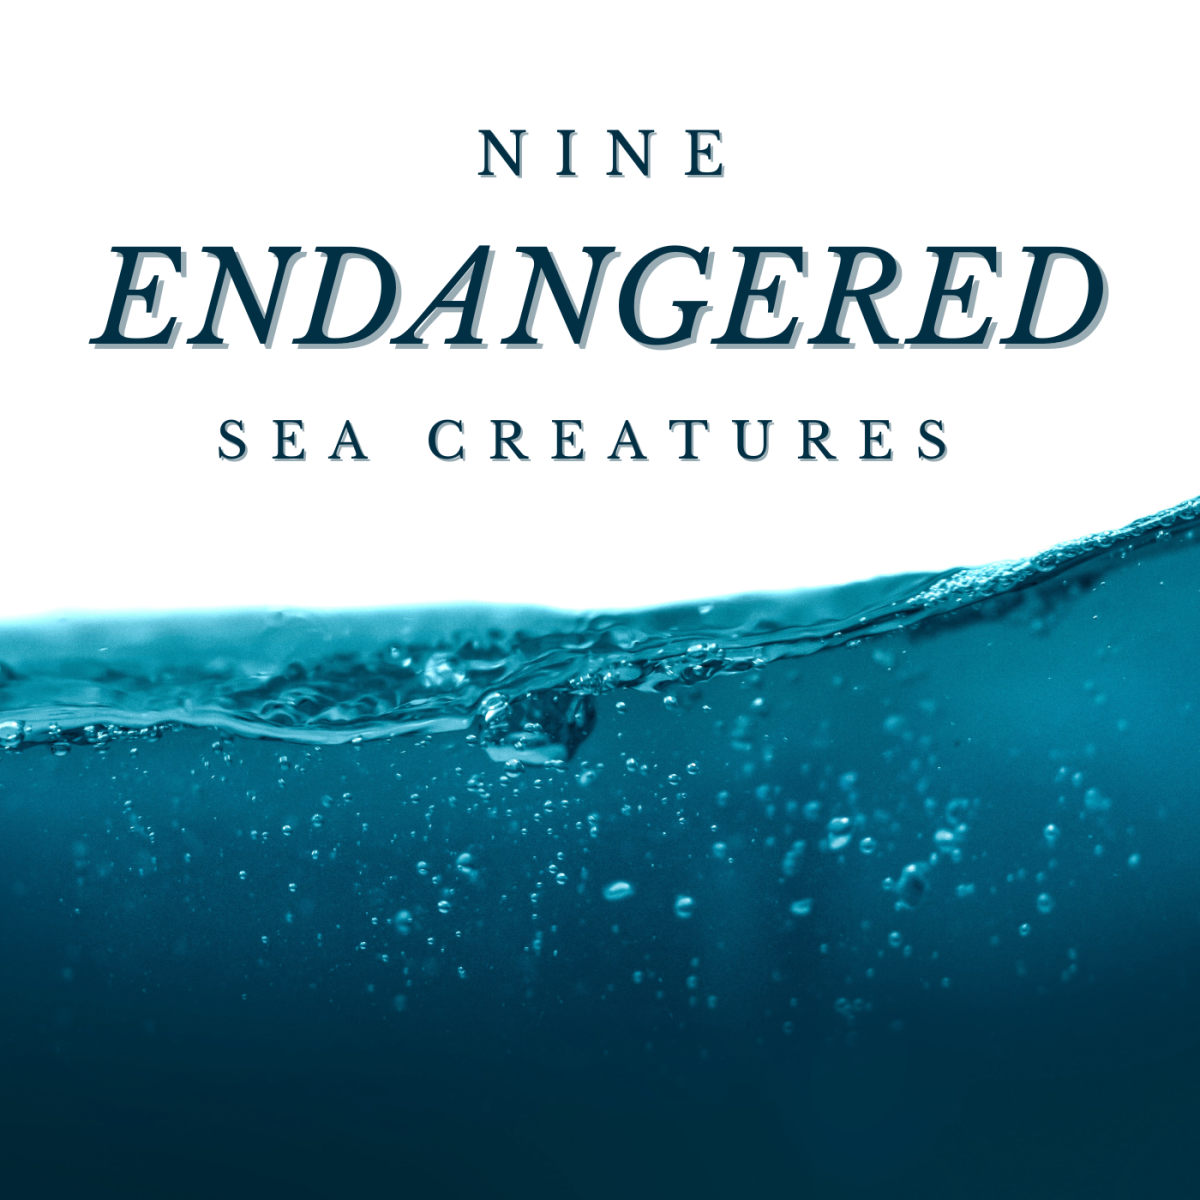 World's 9 Most Endangered Marine Animals